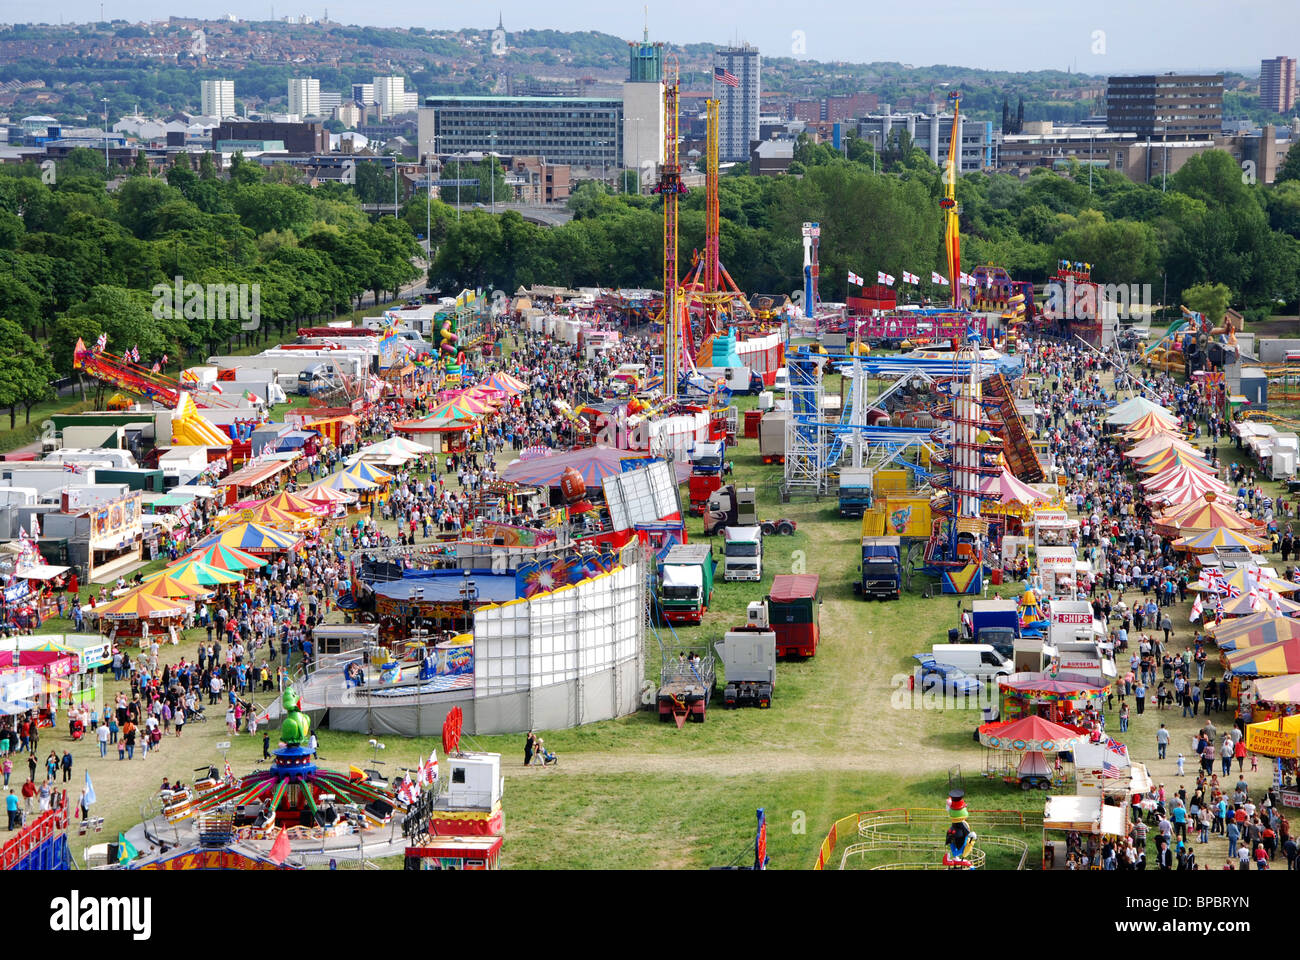 The Hoppings Fairground Newcastle Upon Tyne United Kingdom Stock Photo